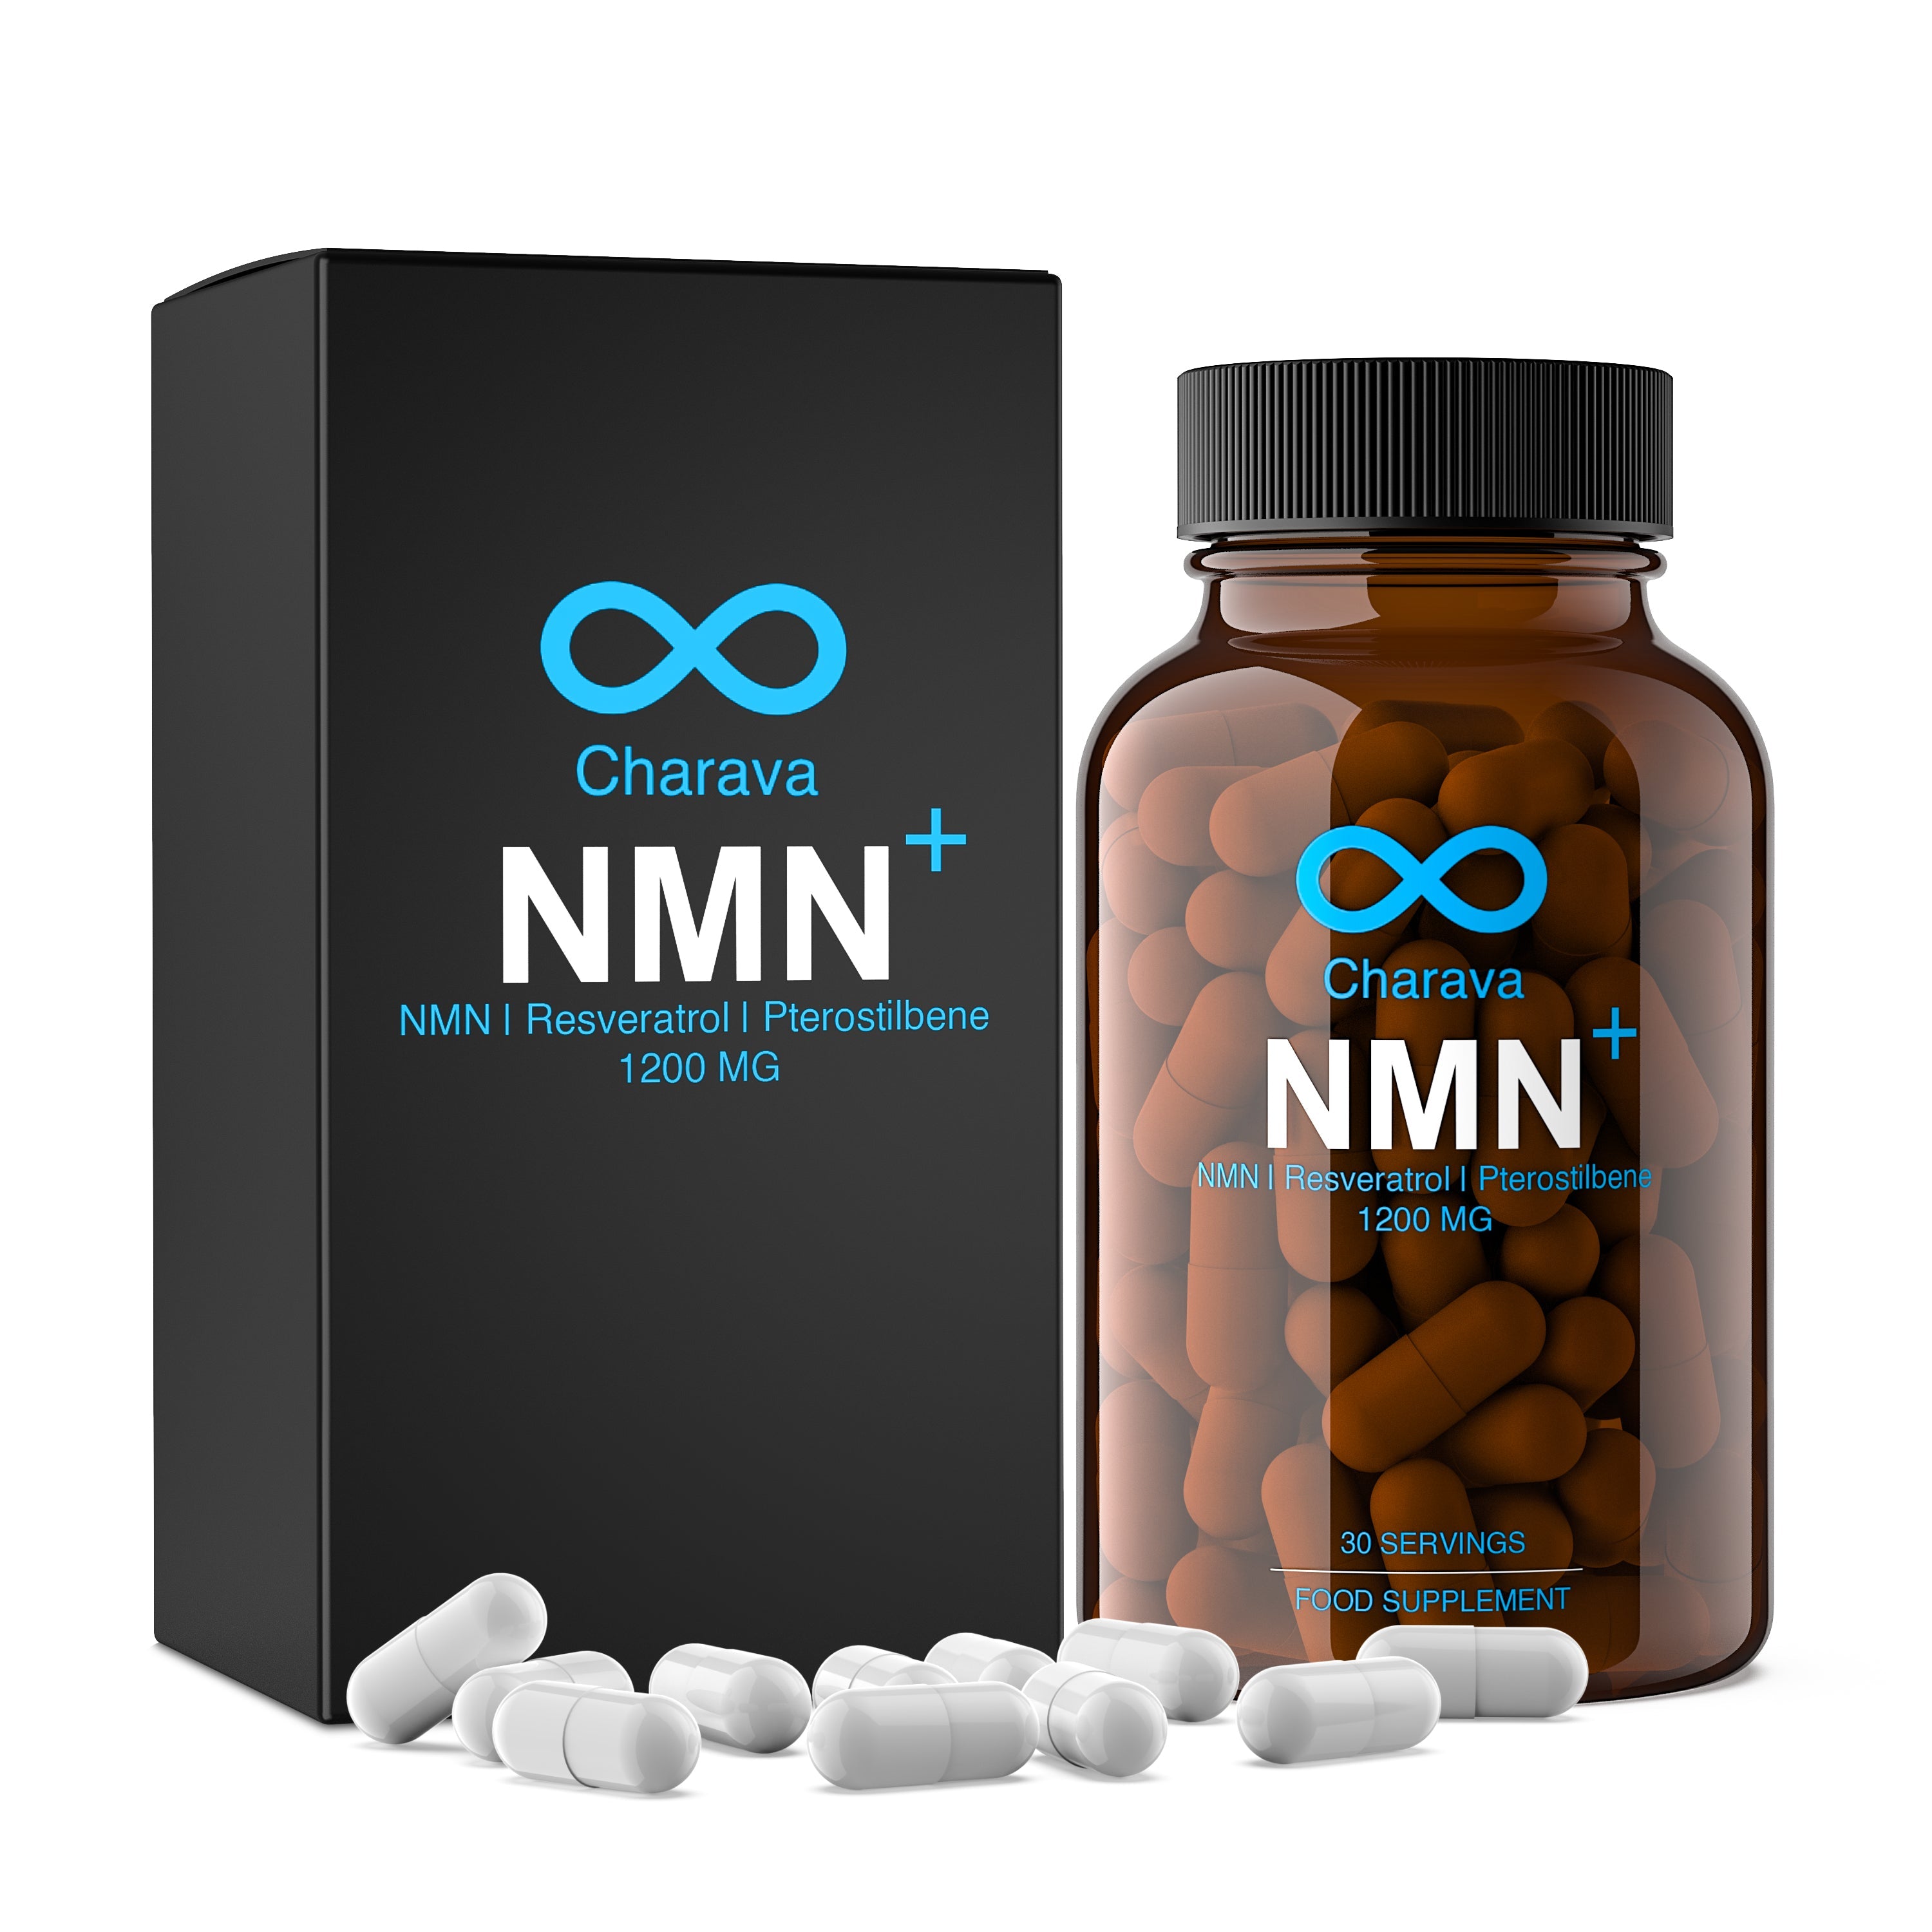 NMN+1200 (NMN, Resveratrol, Pterostilbene) - Charava MENA